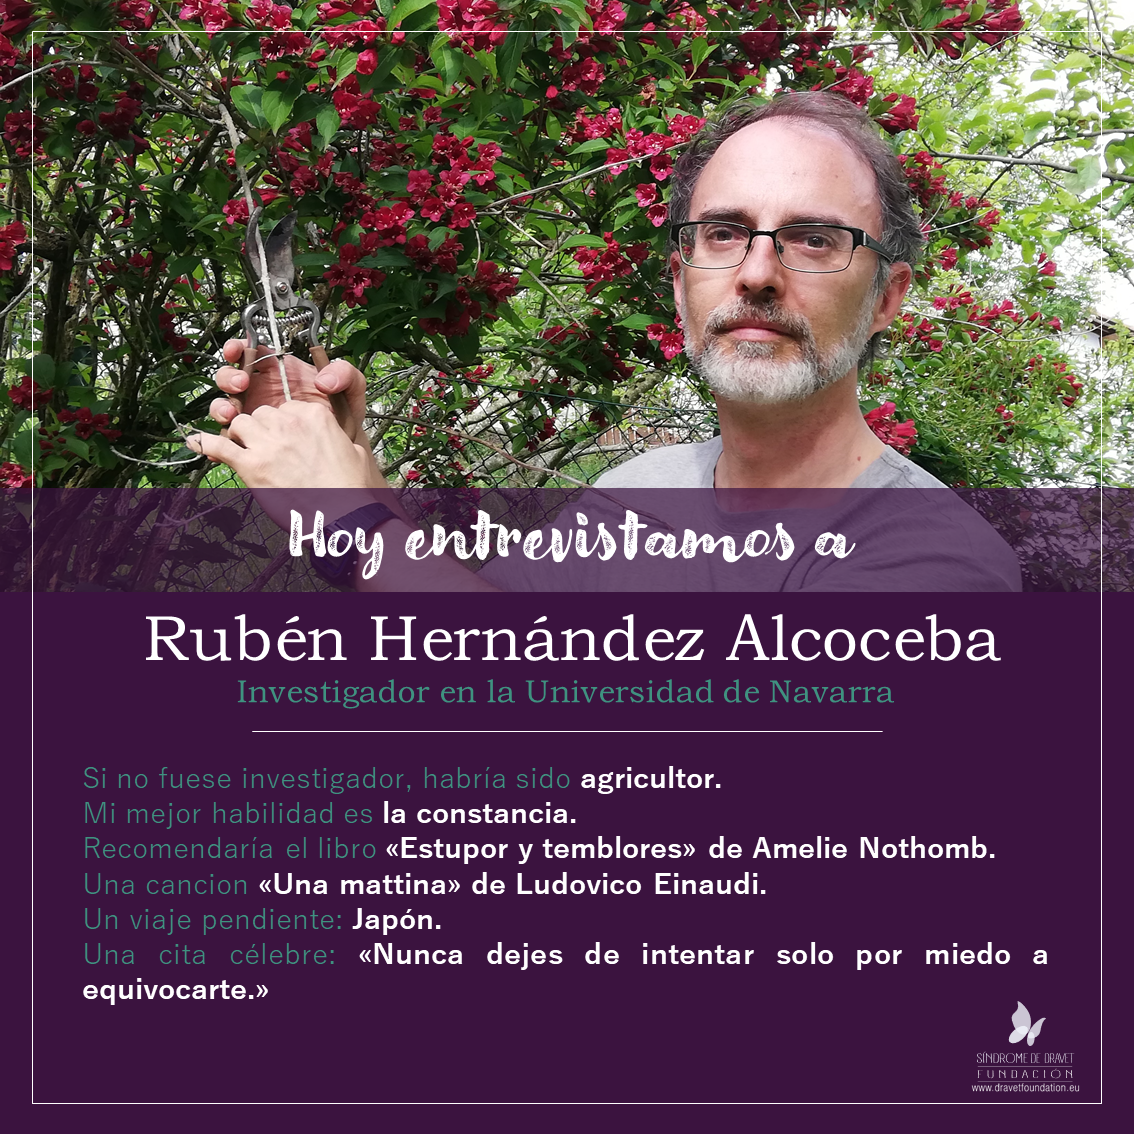 Hoy entrevistamos a Rubén Hernández Alcoceba